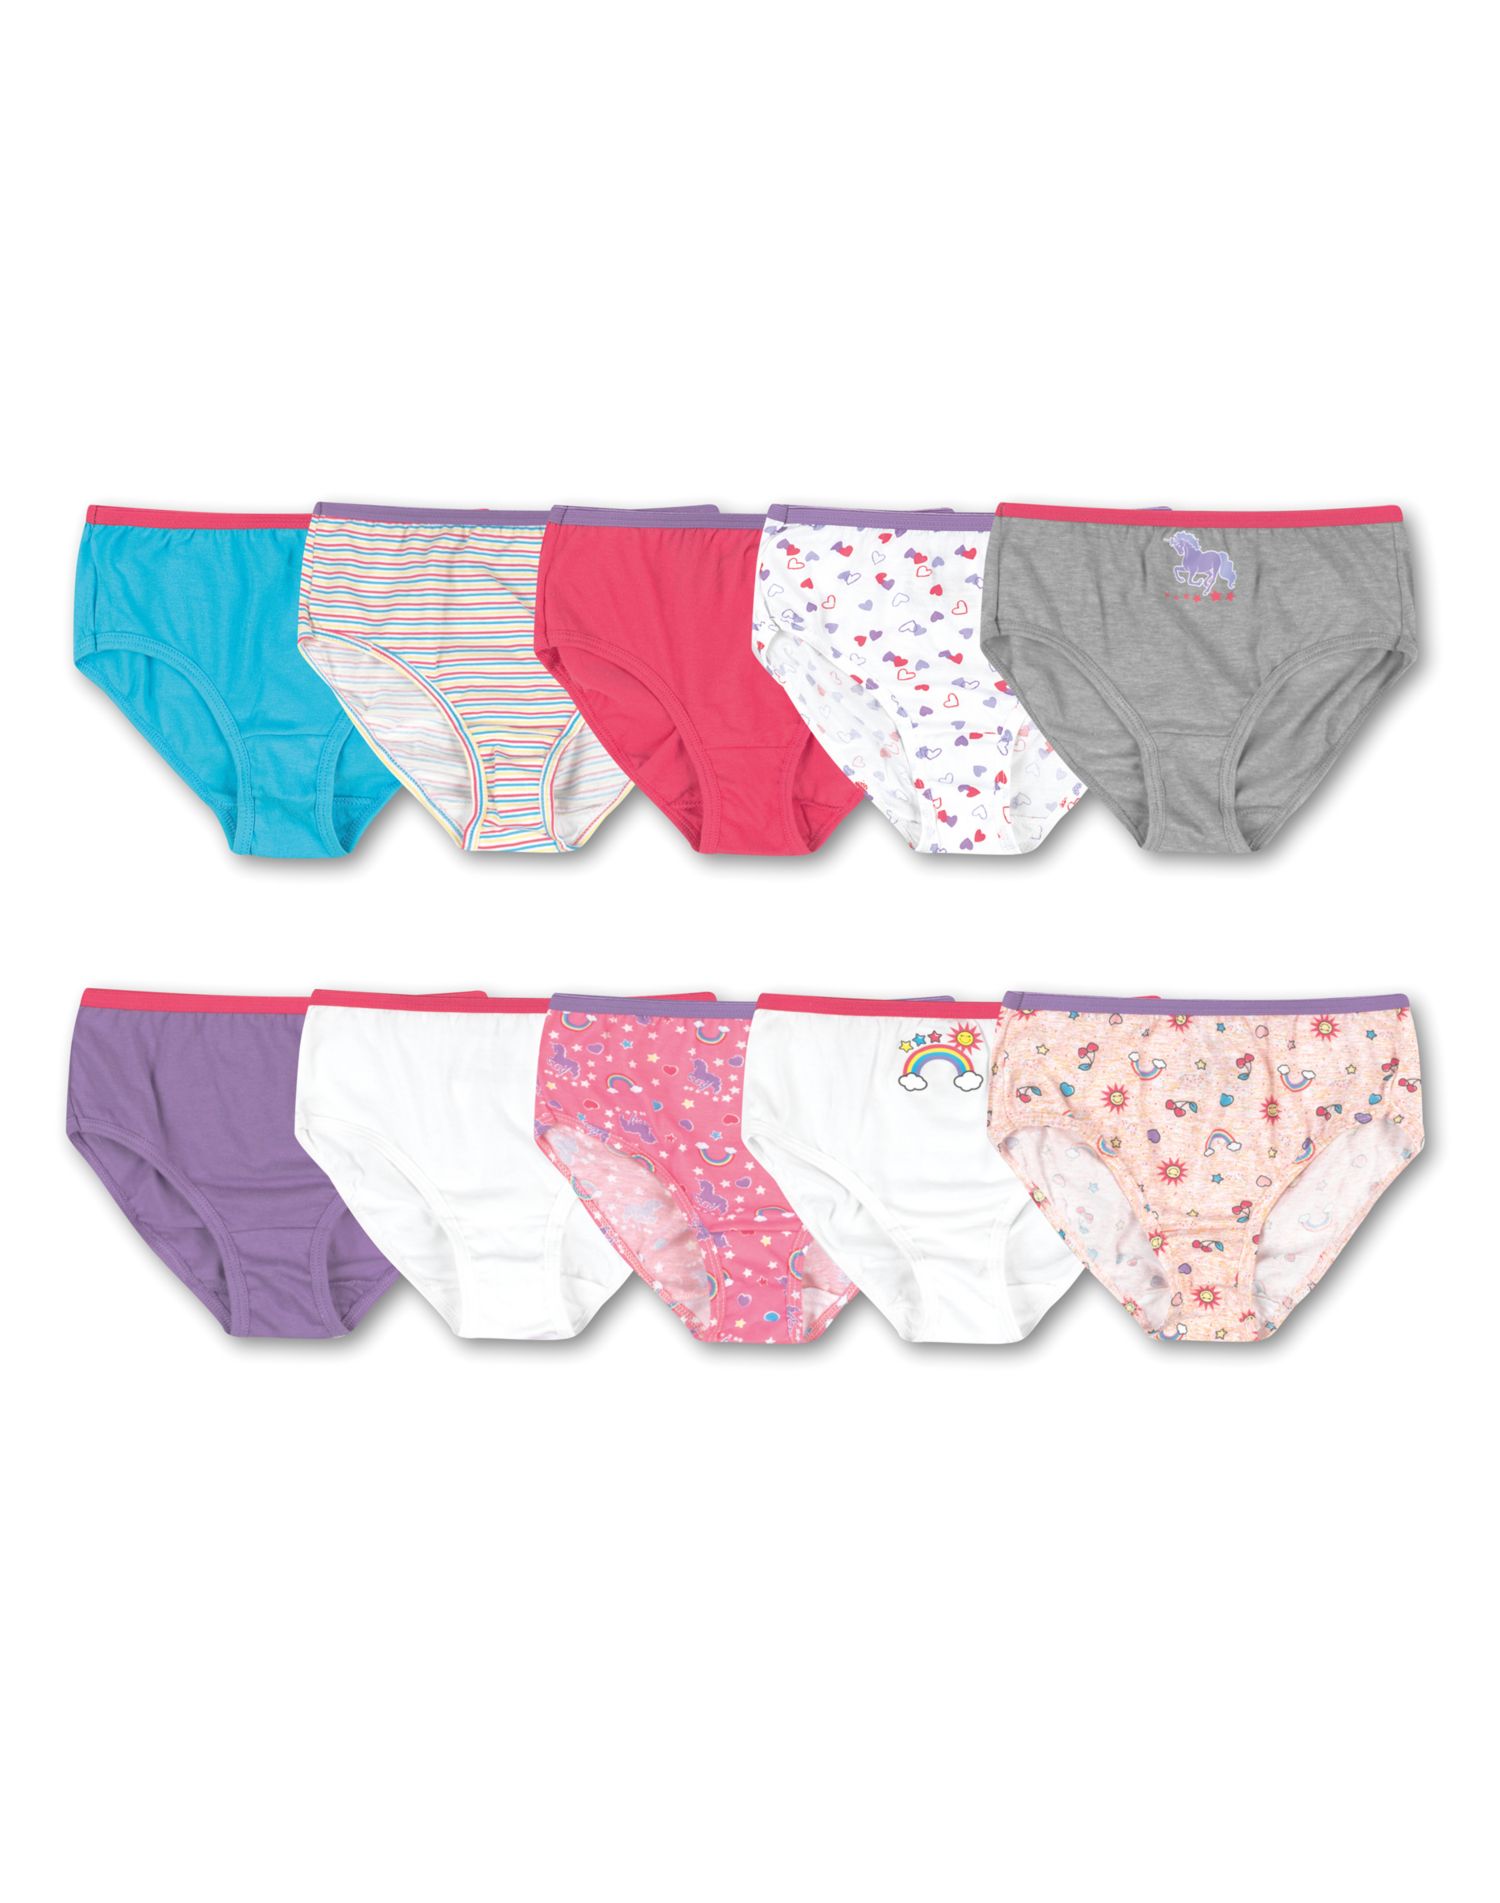 Hanes Girls and Toddler Underwear, Cotton Knit Tagless Brief